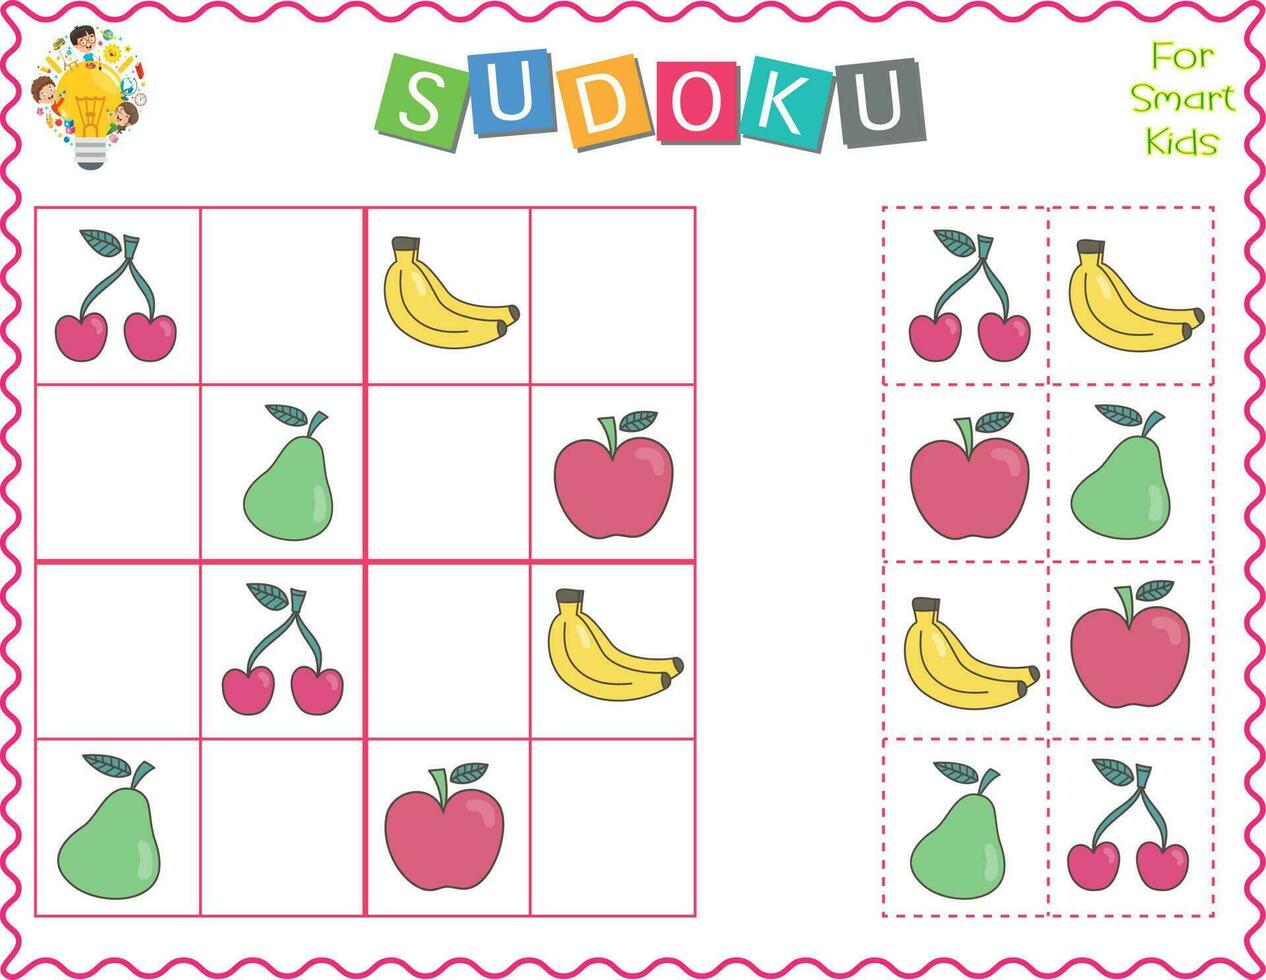 sudoku per figli, è un educativo gioco. cartone animato frutta S mela, Banana, Pera, e ciliegia. uso forbici e colla per riempire nel il mancante elementi. logico pensiero con bene il motore abilità per bambini vettore